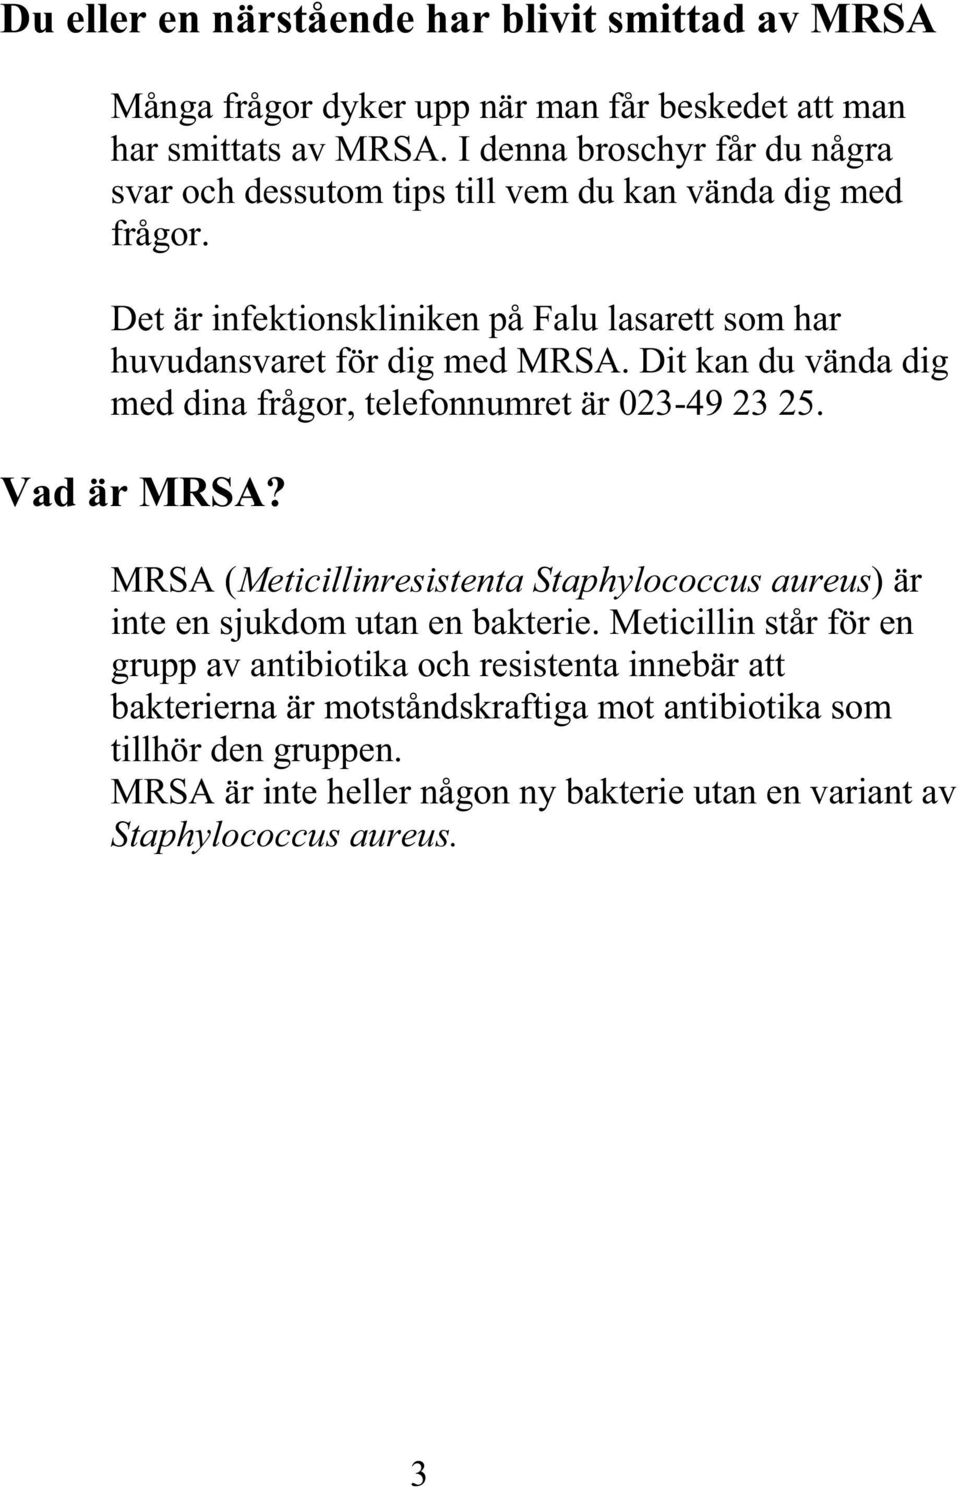 Dit kan du vända med dina frågor, telefonnumret är 023-49 23 25. dig Vad är MRSA? MRSA ( M eticillinresistenta Staphylococcus aureus) är i nte en sjukdom utan en bakterie.